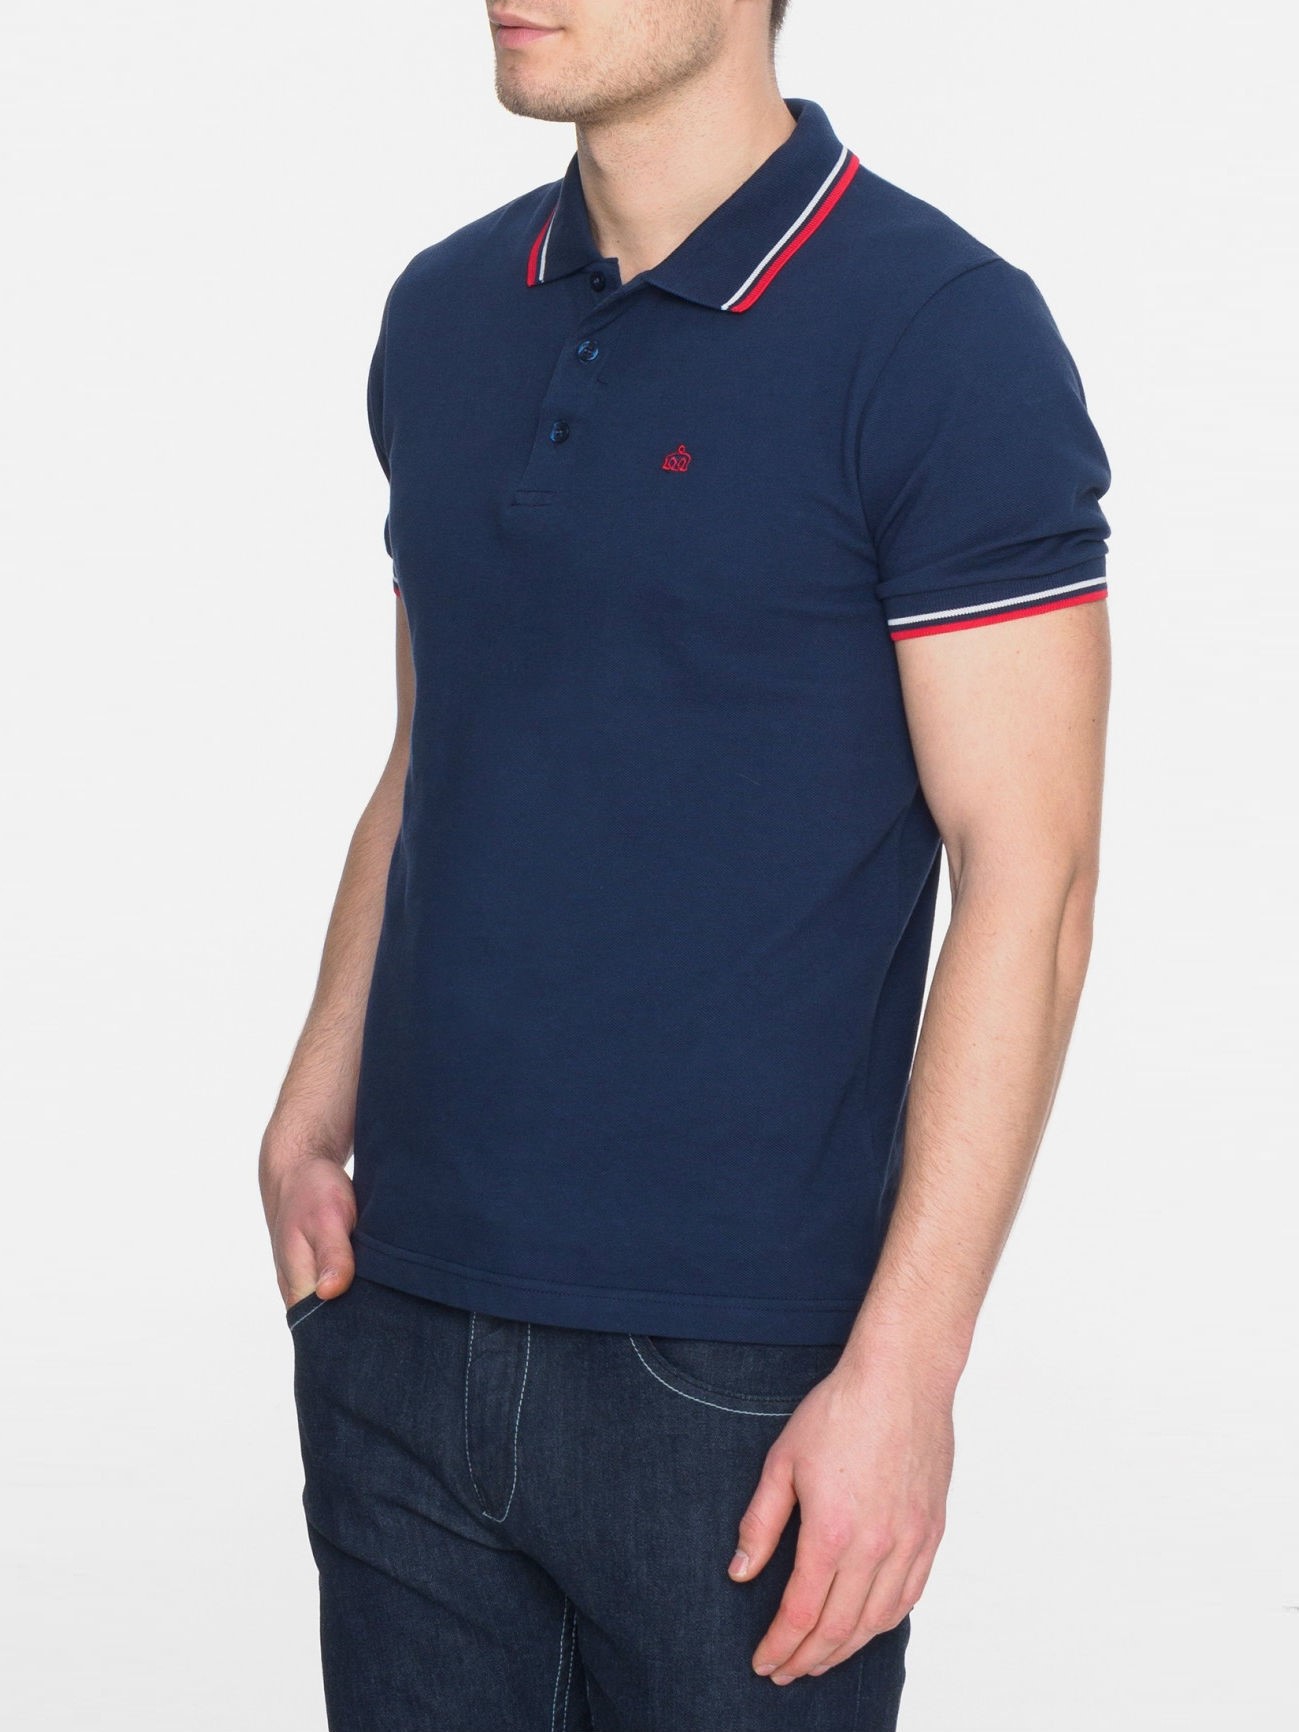 Рубашка Поло Merc Card, navy / red (синяя с красно-белой окантовкой), классическая, хлопковая (пике)